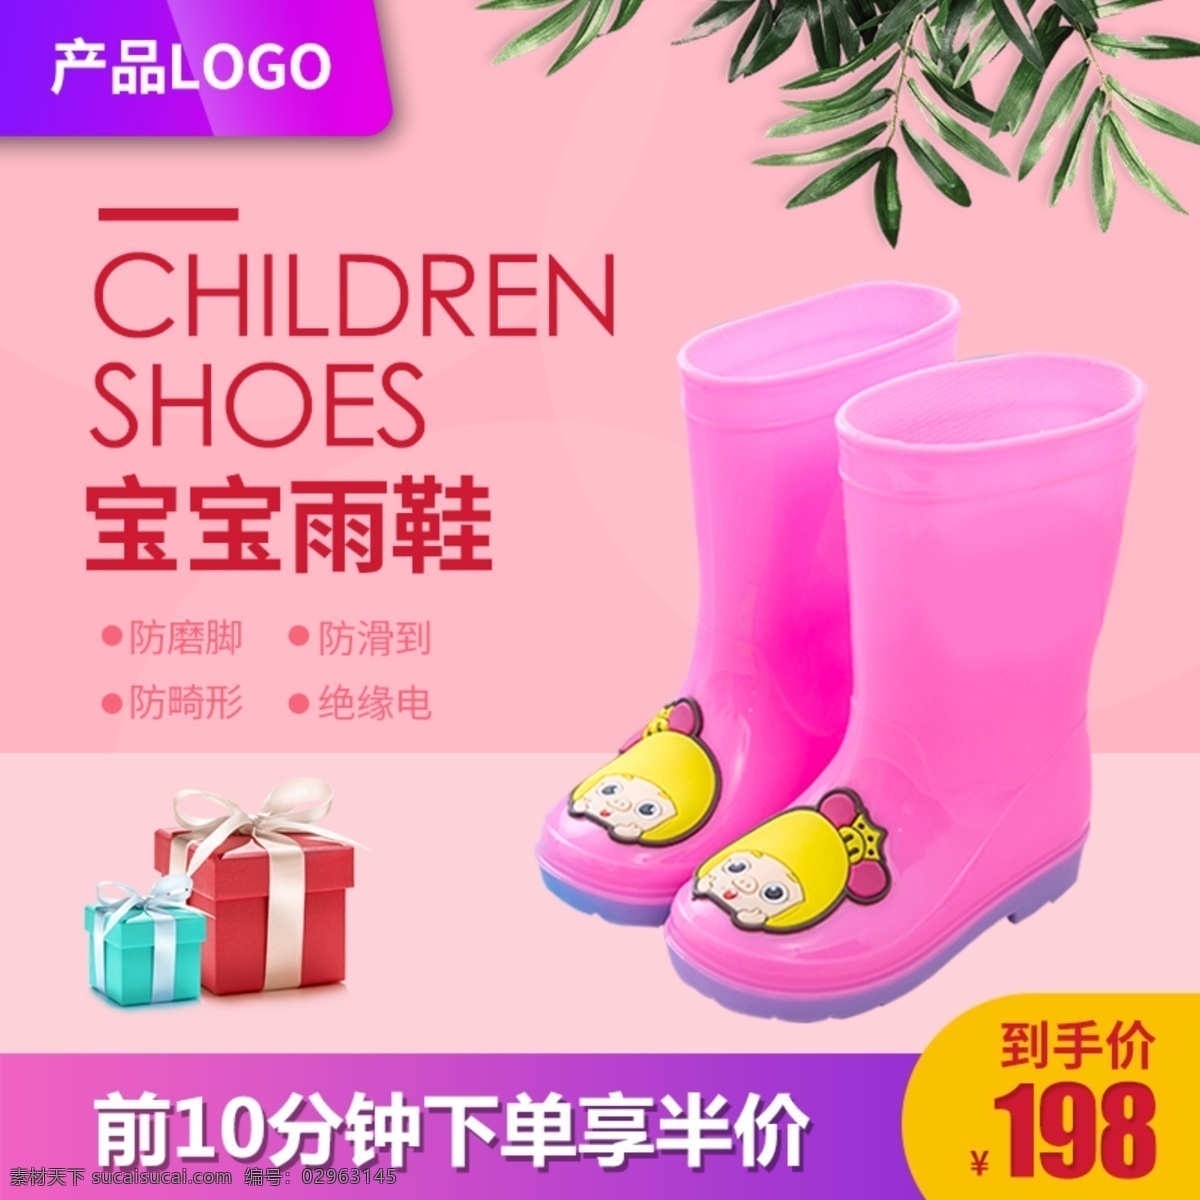 儿童 雨鞋 水靴 直通 图 胶鞋 防滑到 礼盒 粉色背景 宝宝雨鞋 放畸形